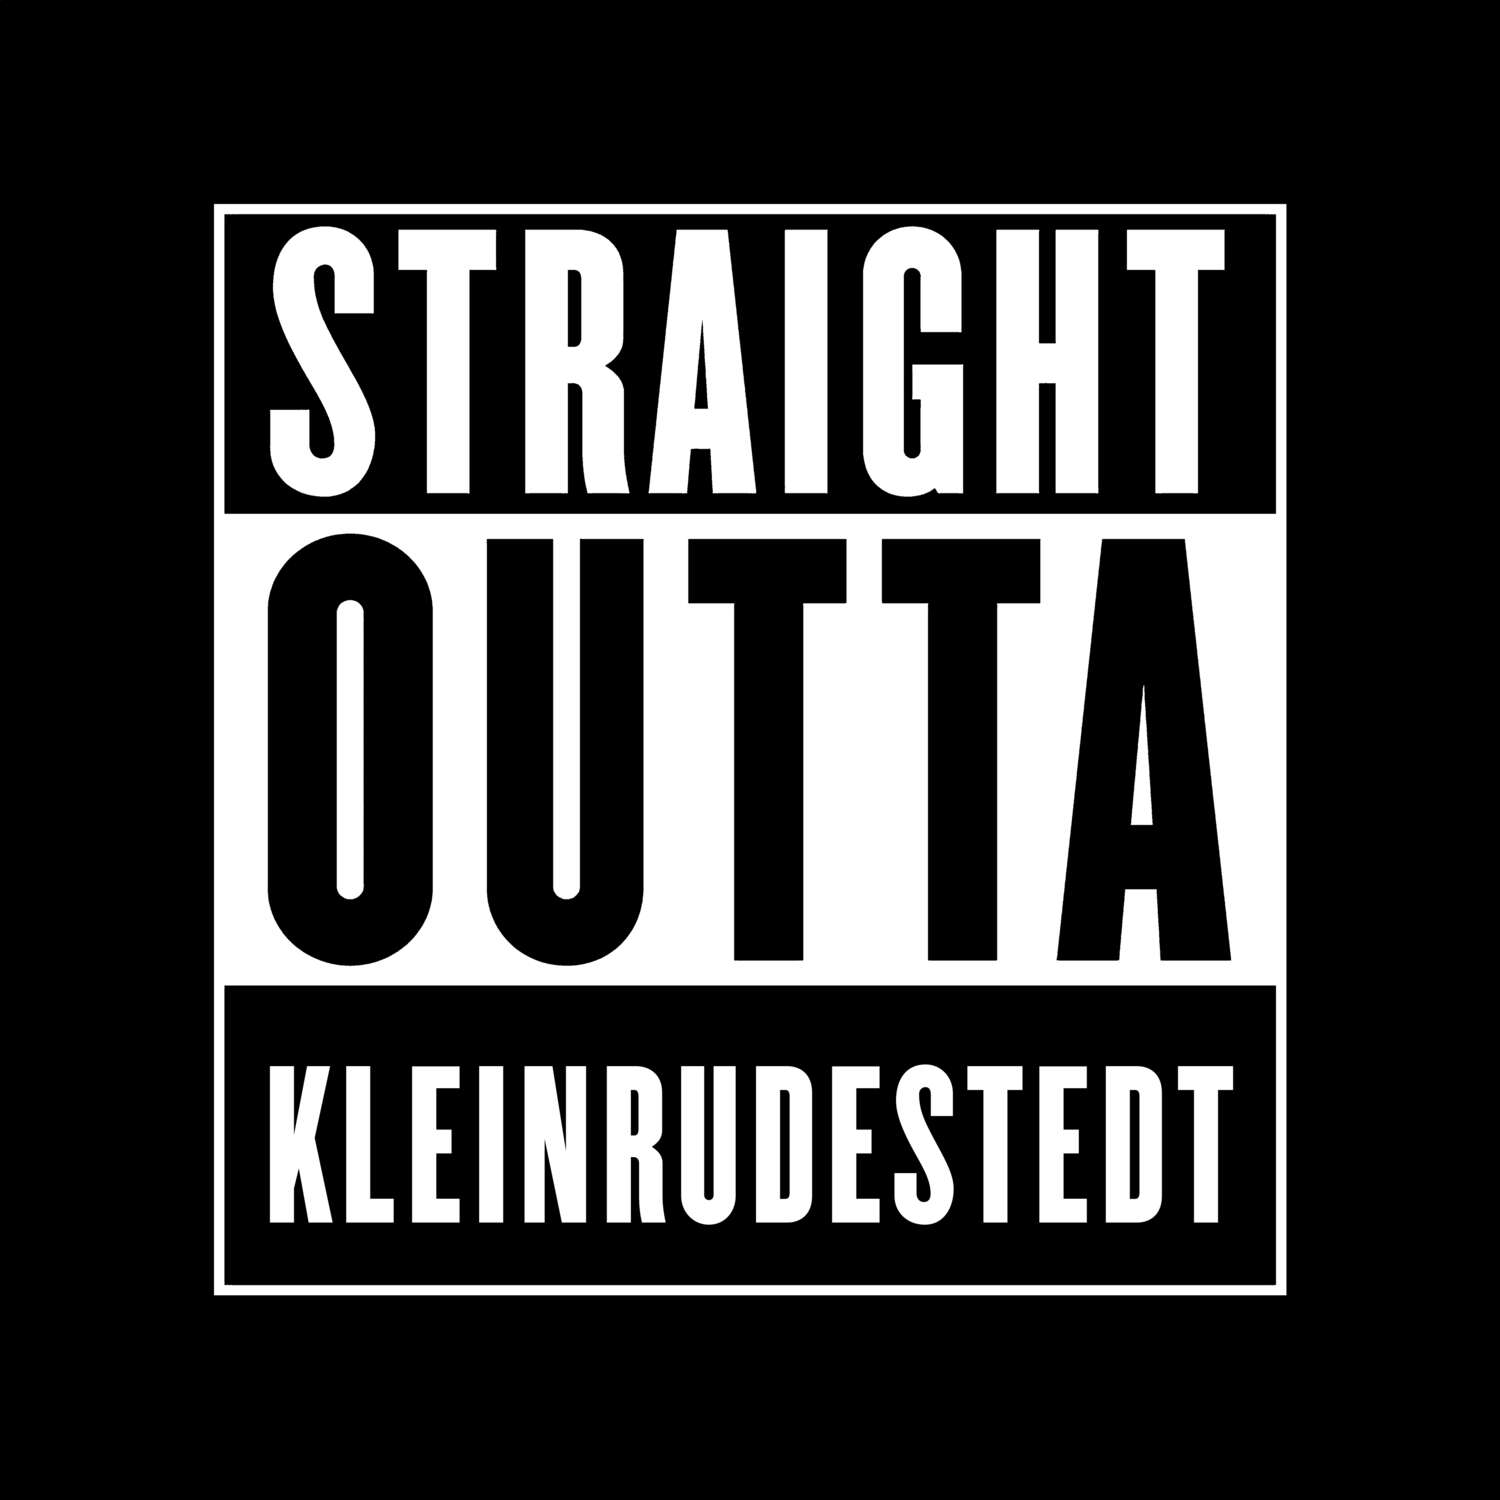 Kleinrudestedt T-Shirt »Straight Outta«